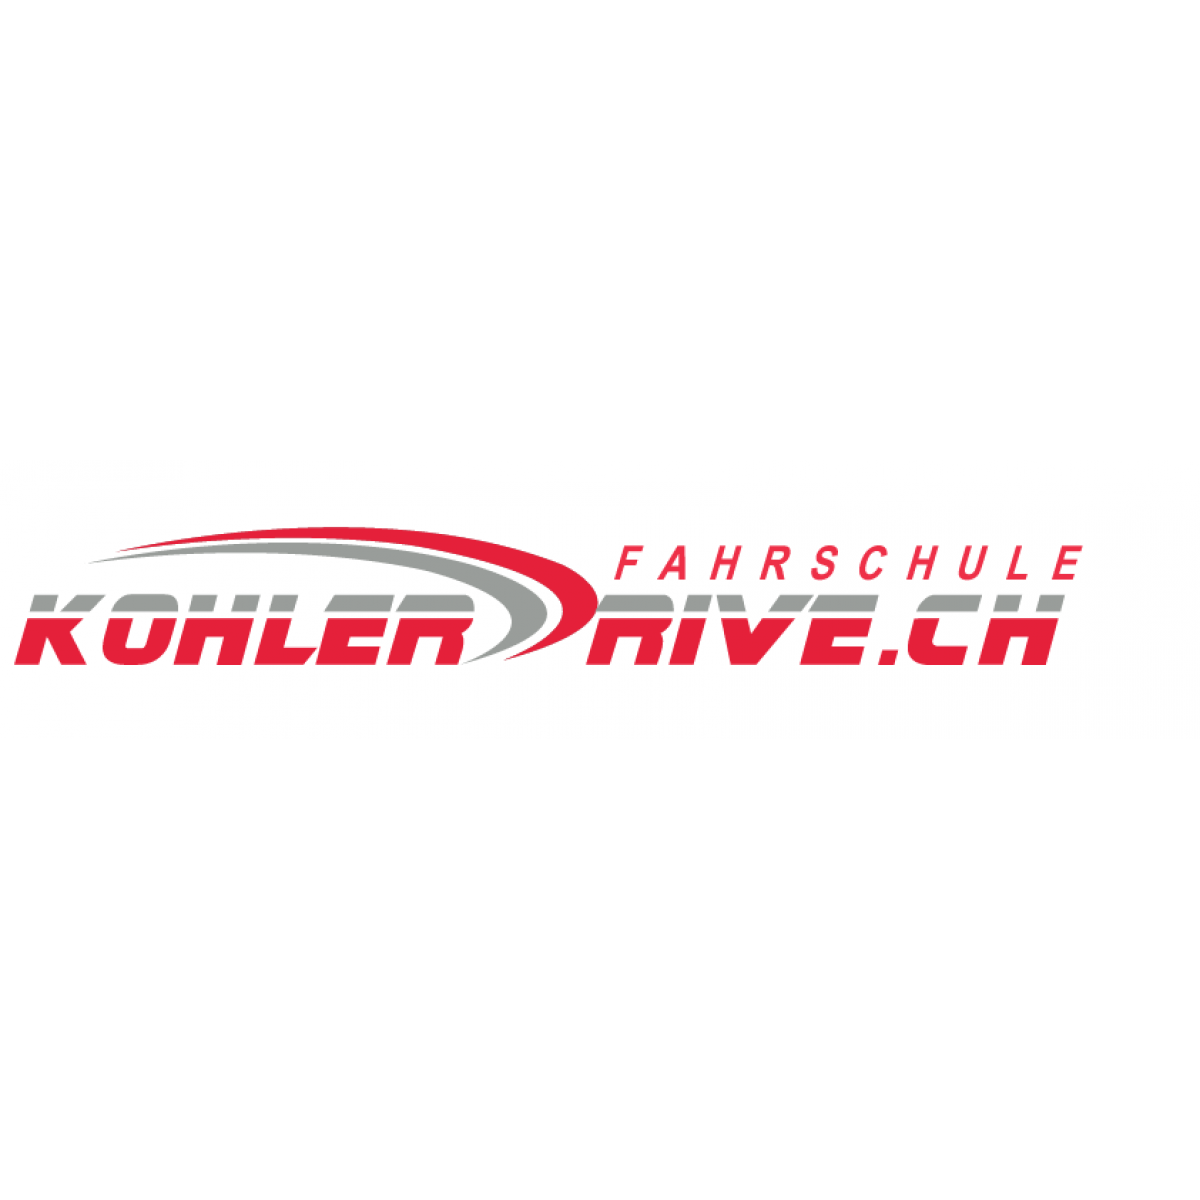 KOHLERDRIVE Logo